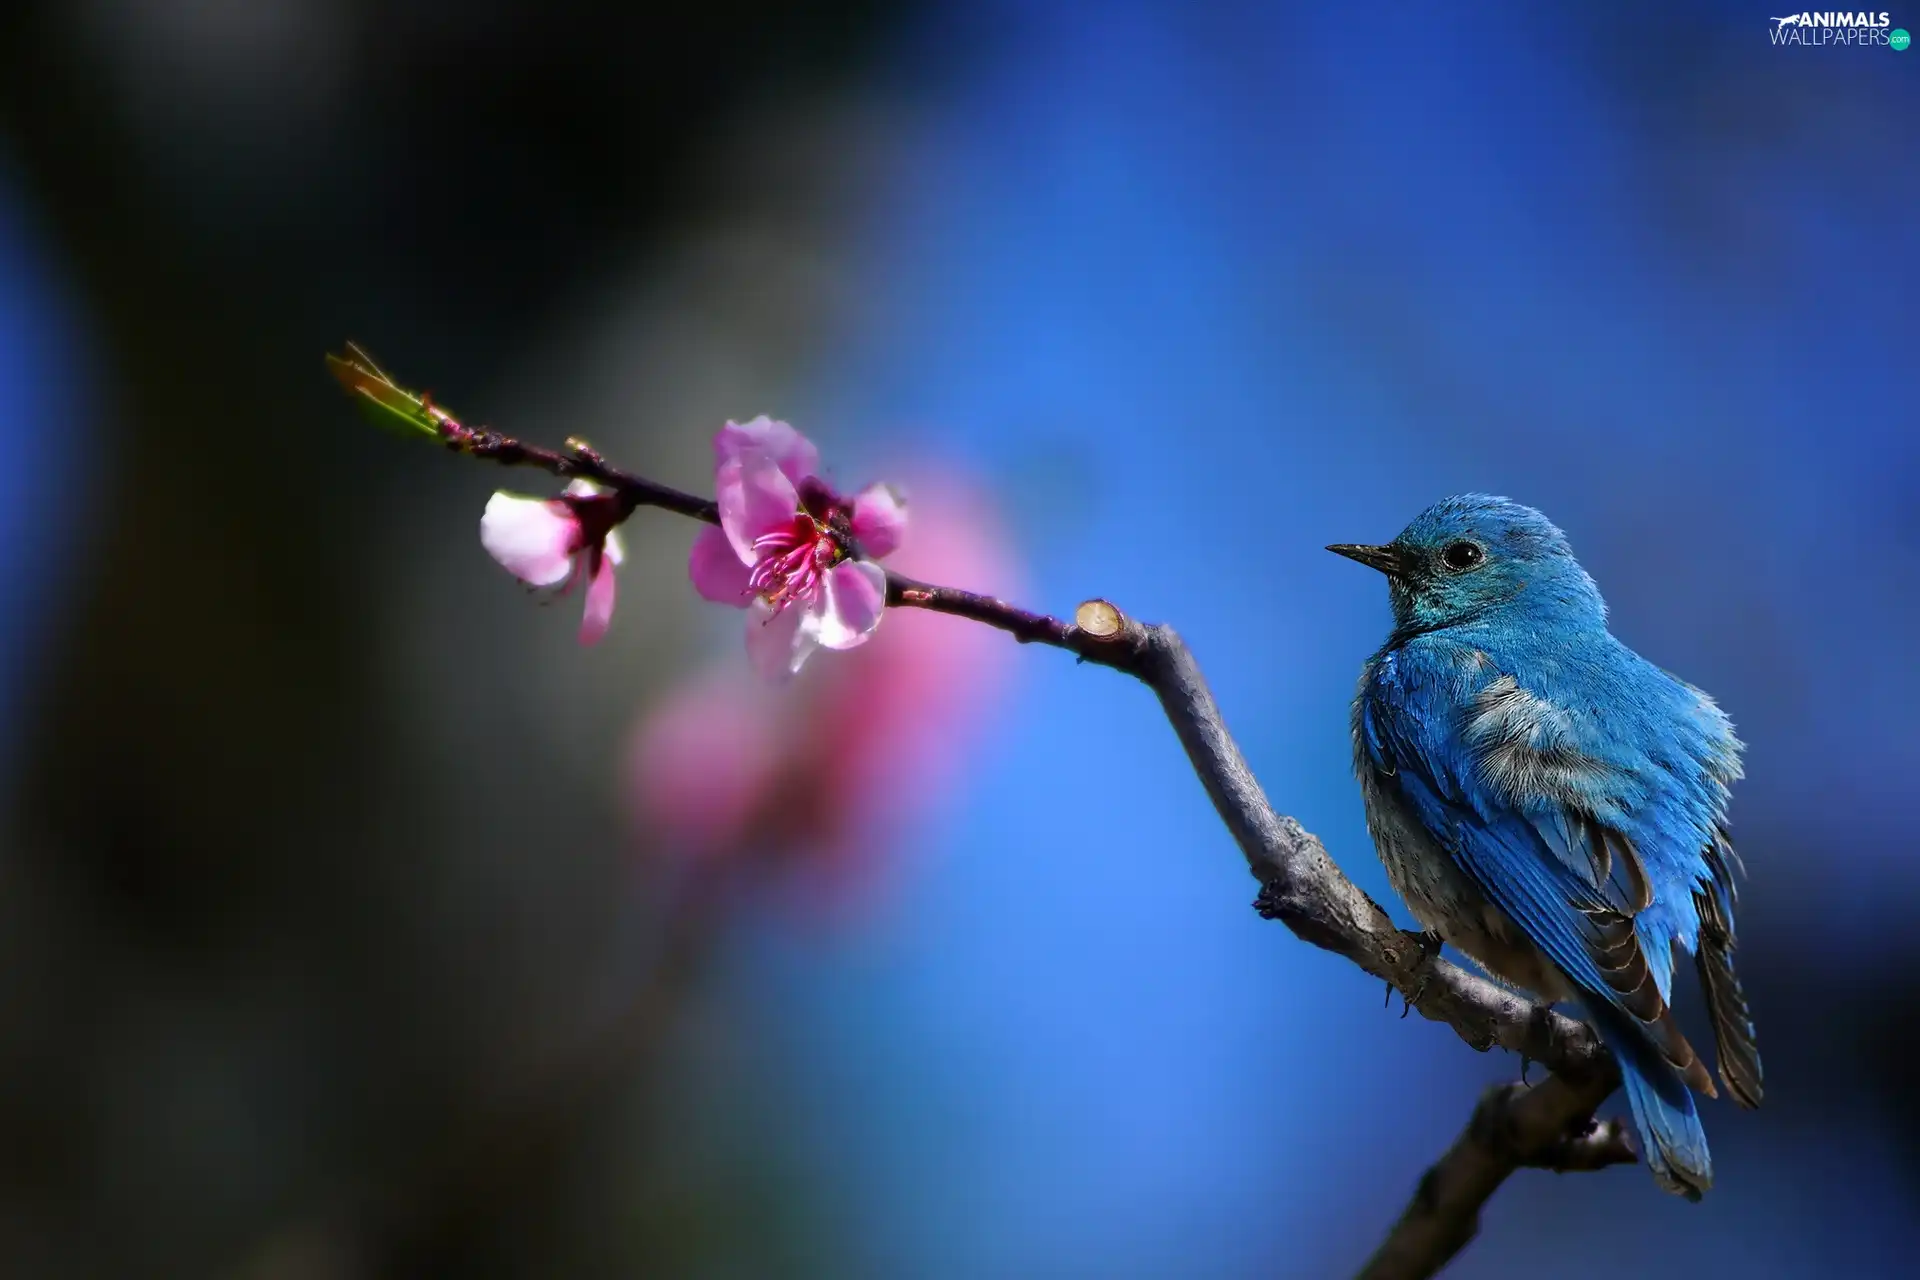 Pink, Flower, Bird, branch, blue